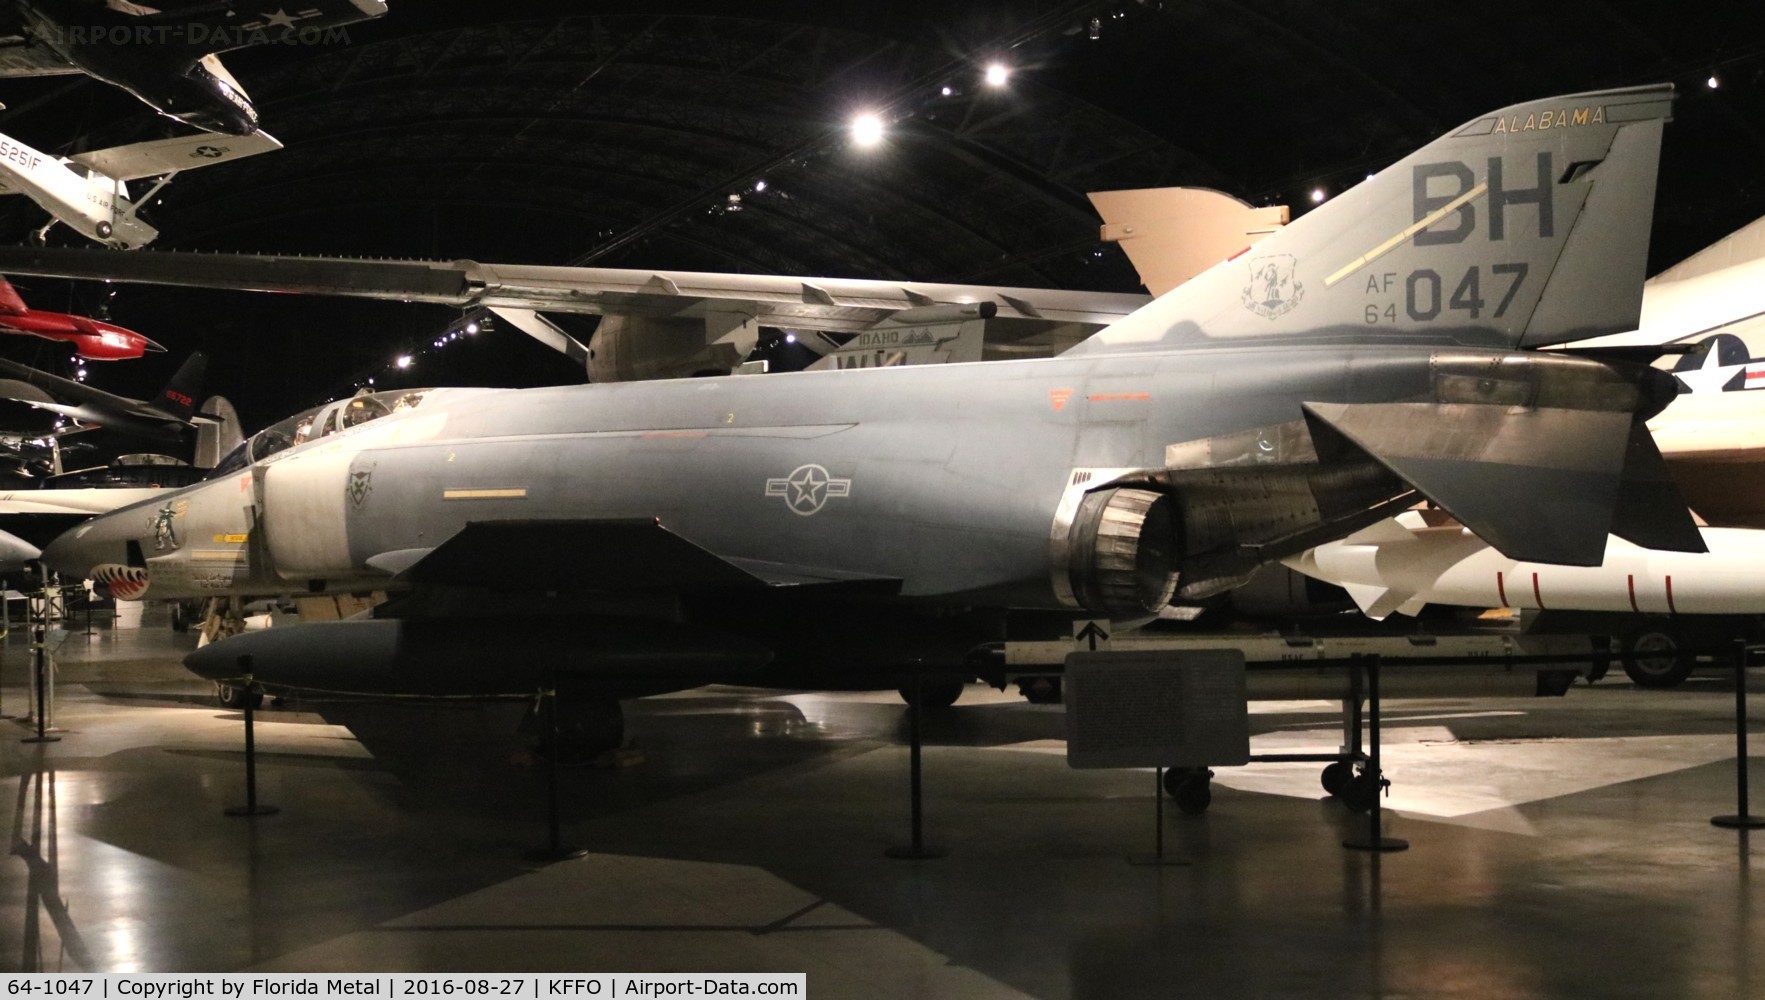 64-1047, 1964 McDonnell RF-4C-22-MC Phantom II C/N 947, RF-4C